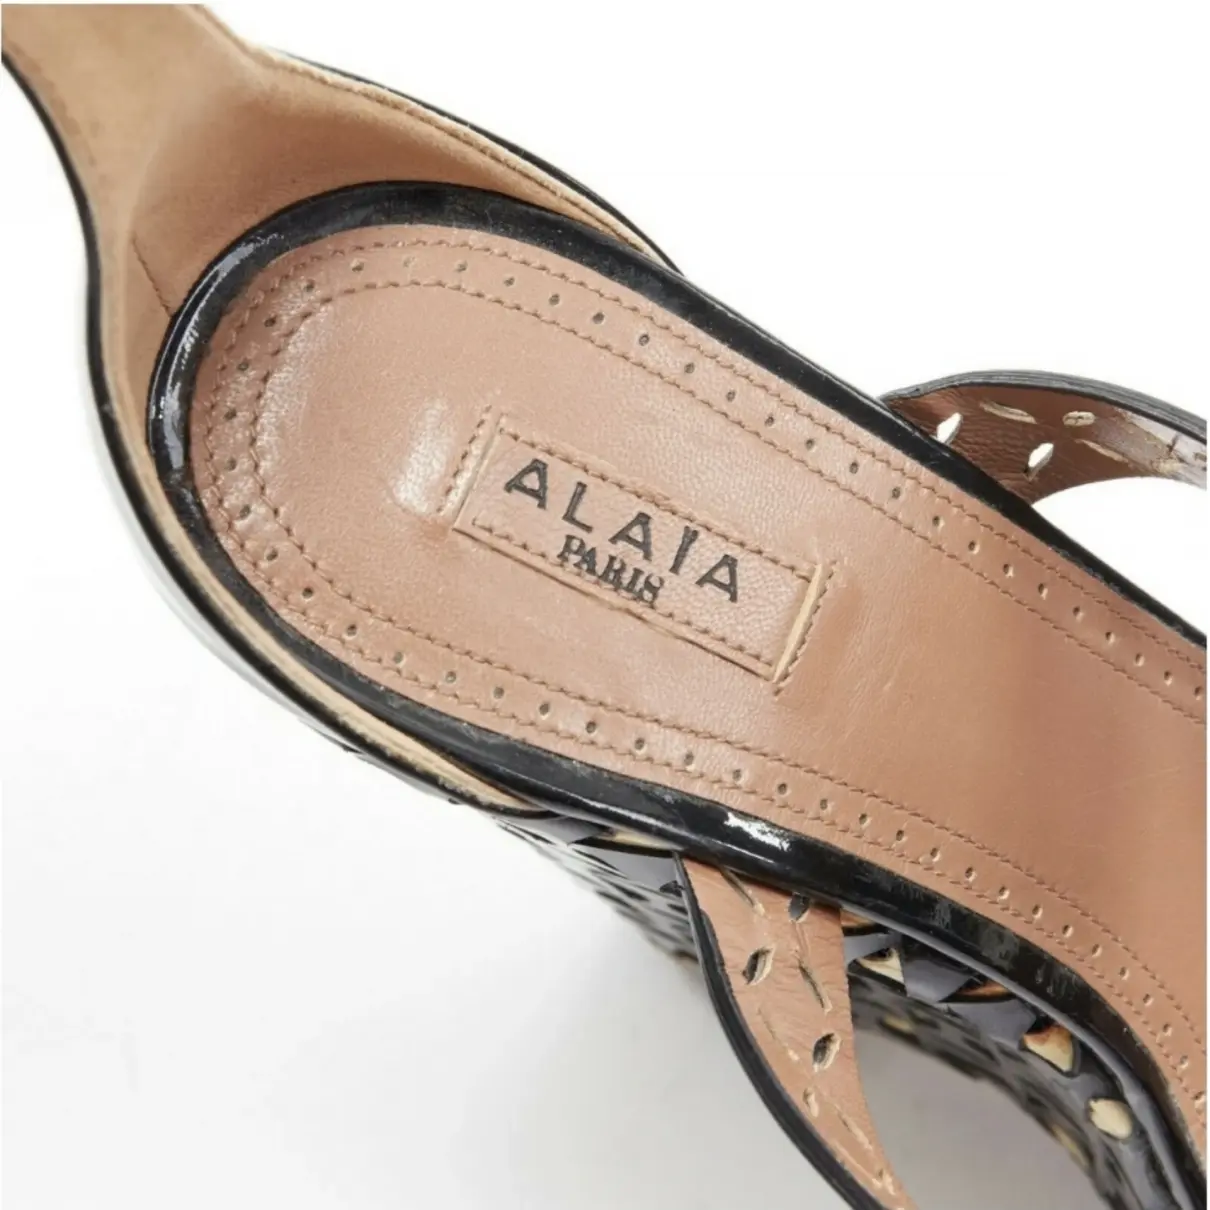 Patent leather sandals Alaïa